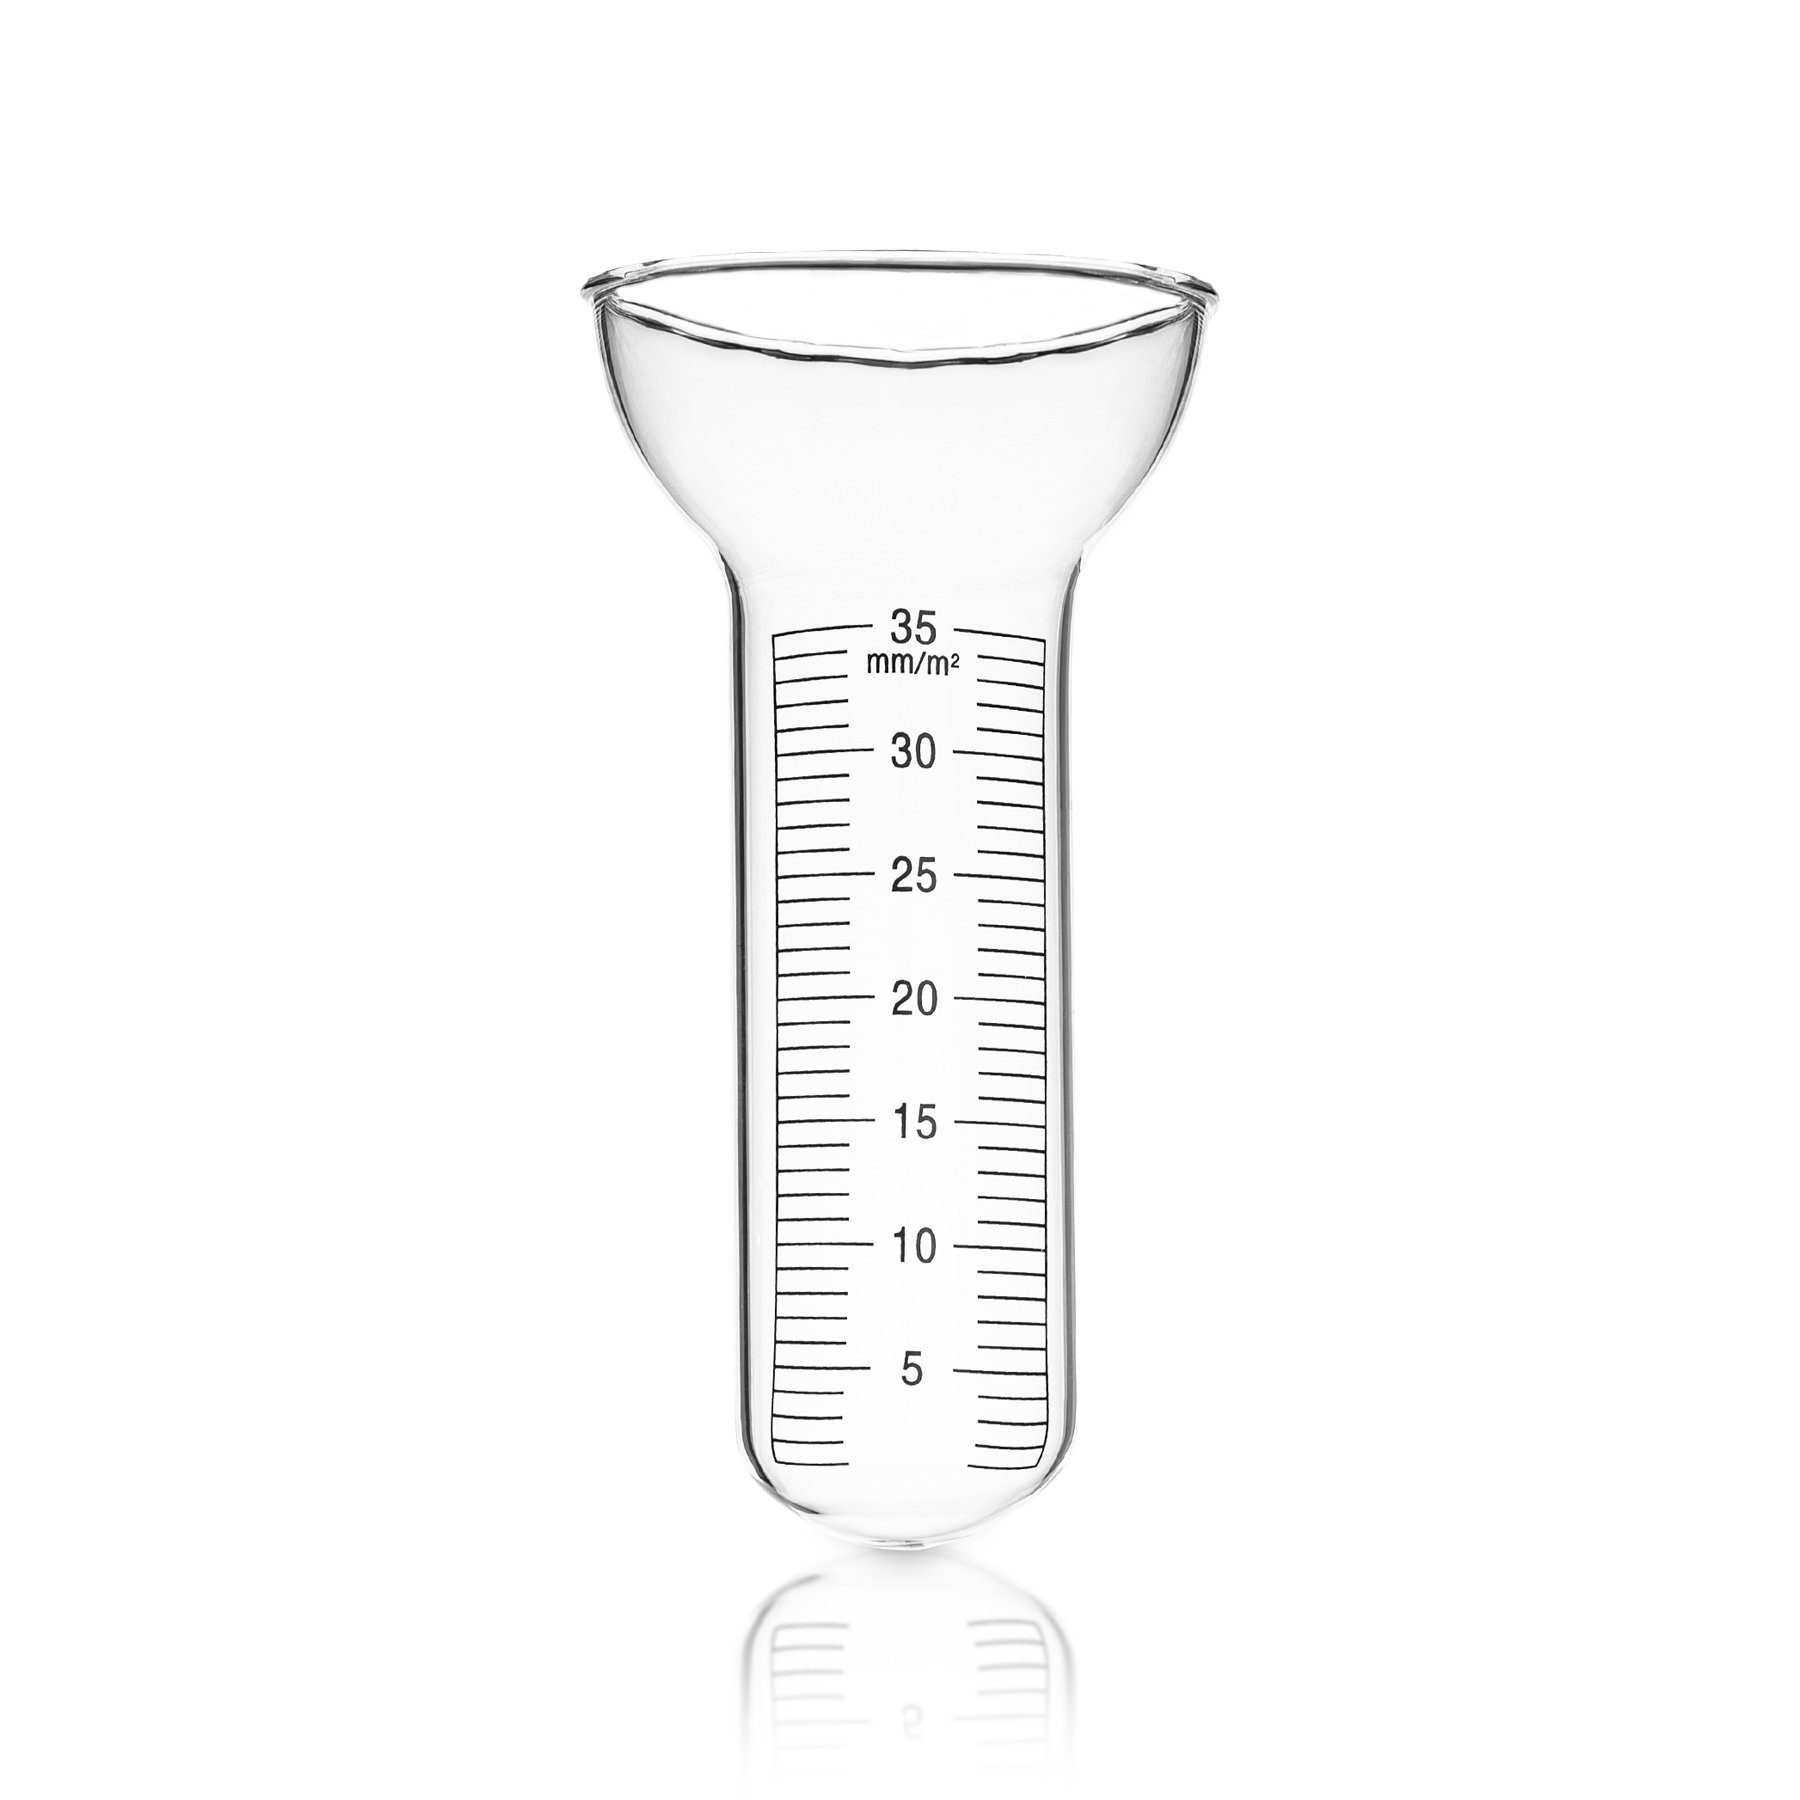 Für Glas Niederschlagsmesser 1-35 mm Regenmesser BigDean Messungen aus Einfach abzulesen